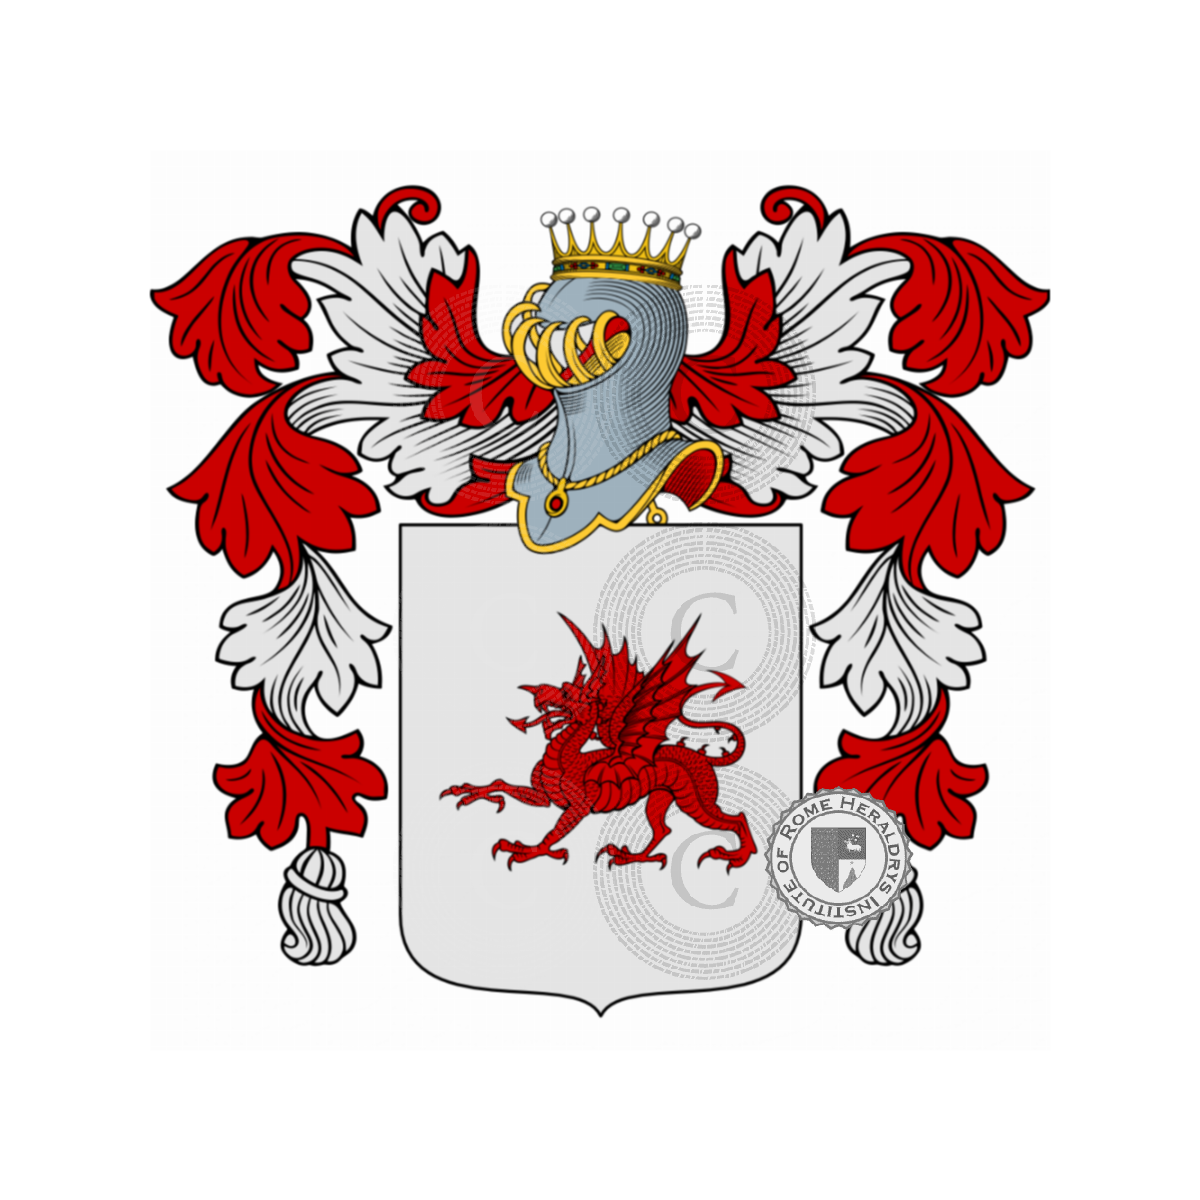 Escudo de la familiaMauro, Dellimauri,Dellimauro,Mauro